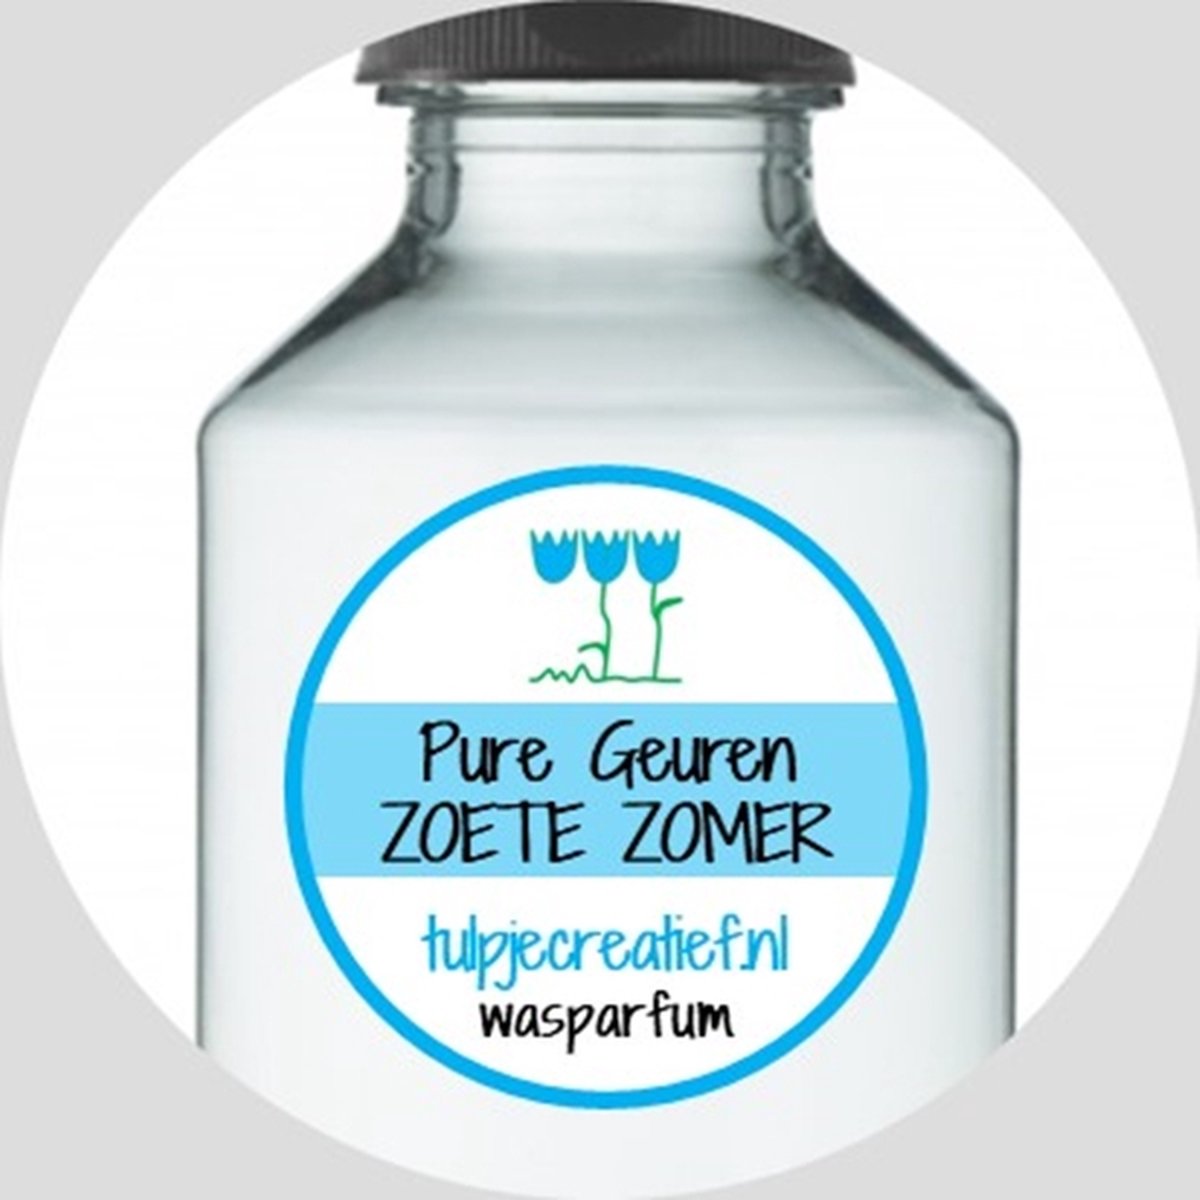 Pure Geuren - Wasparfum - Zoete Zomer - 100 ml - 20 wasbeurten